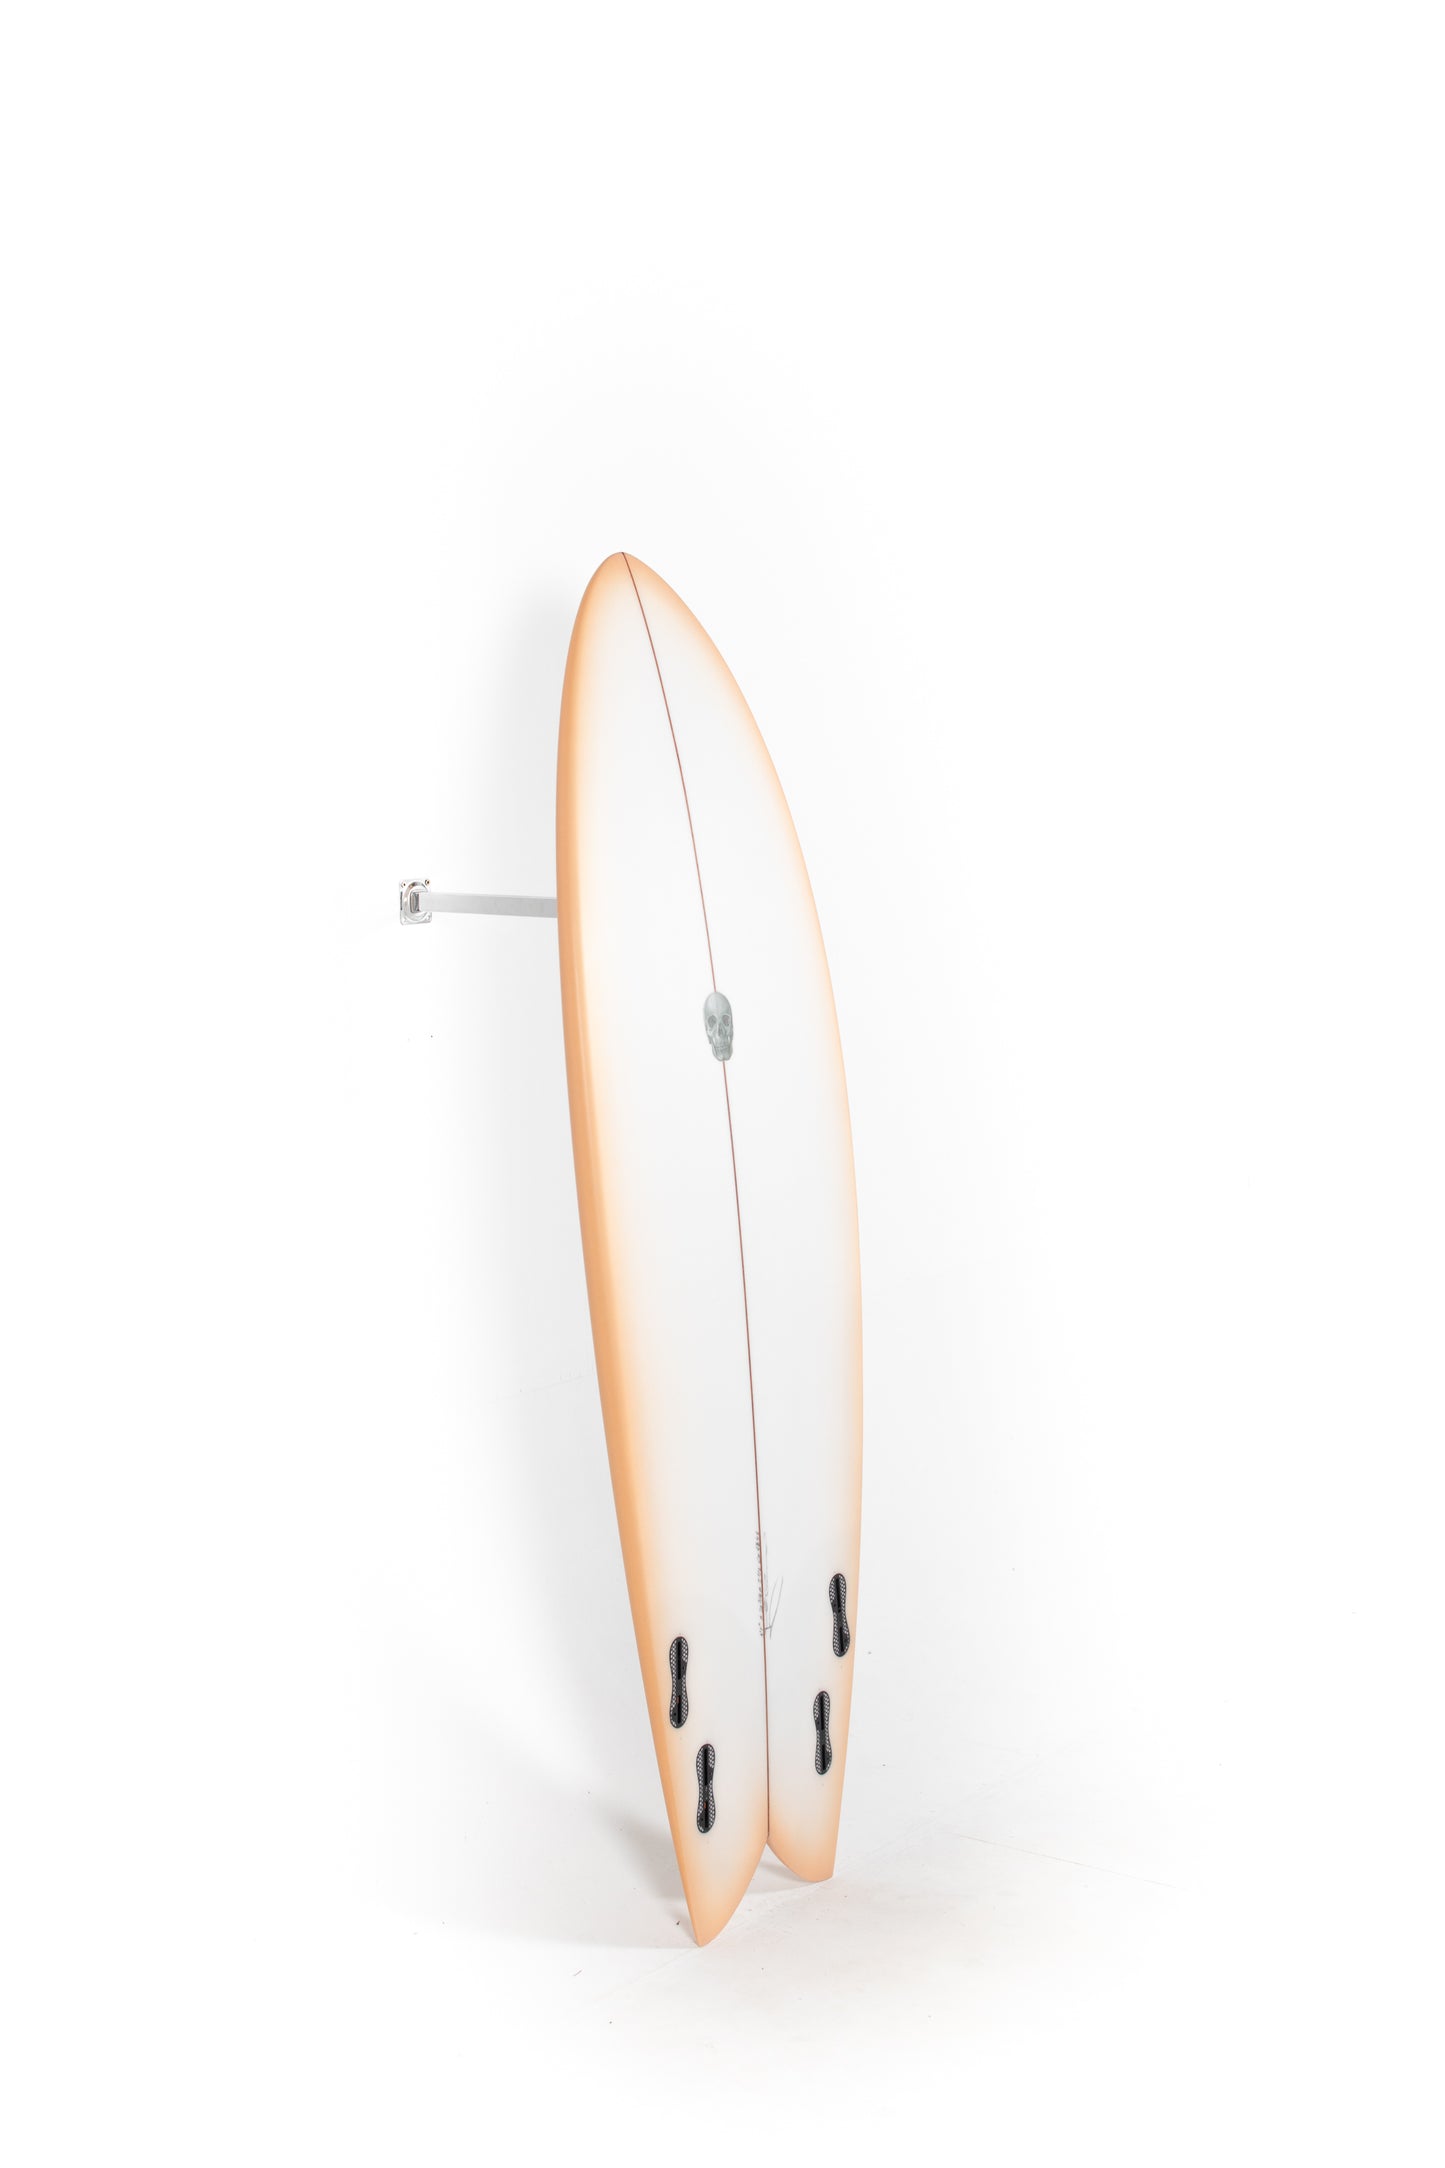 
                  
                    Pukas Surf Shop - Christenson Surfboards - MYCONAUT - 5'7" x 20 3/4 x 2 1/2 - CX04346
                  
                